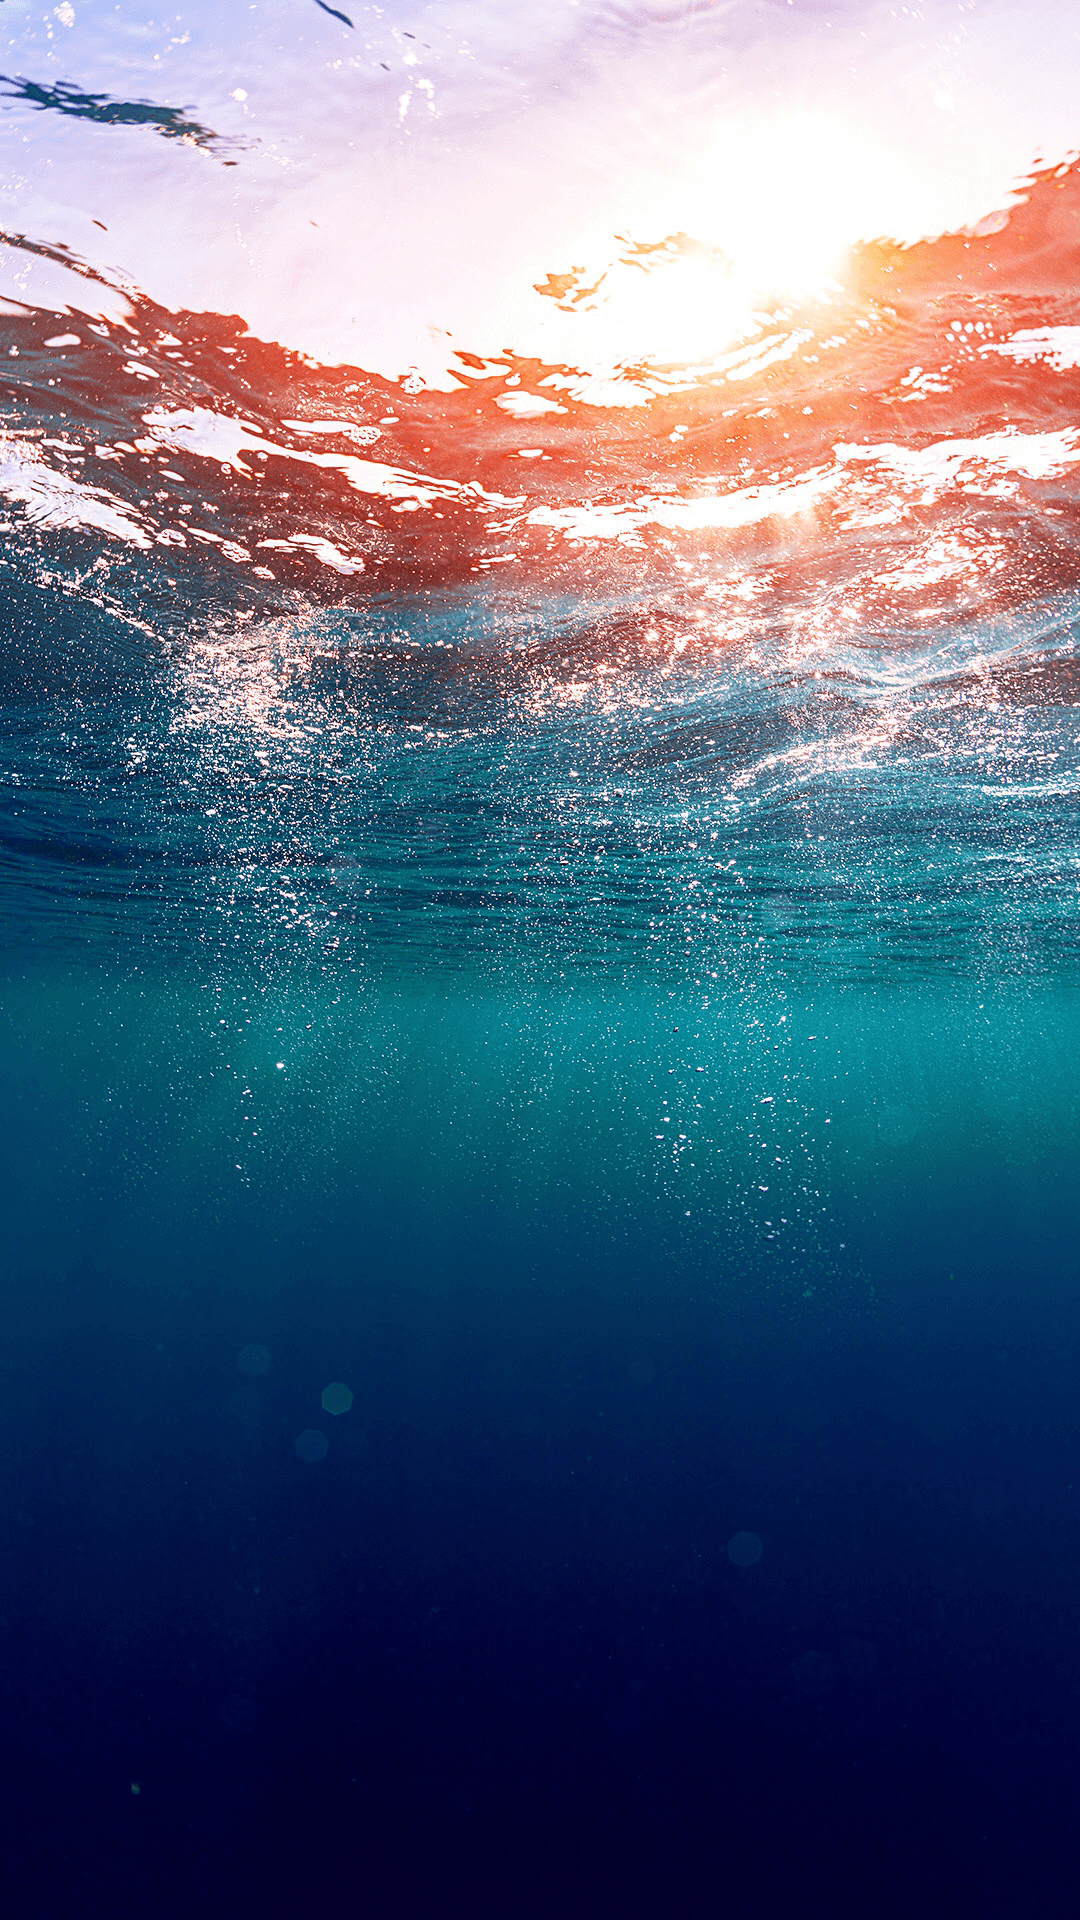 wallpaper, sea, and ocean image. Water. iPhone 6 plus wallpaper